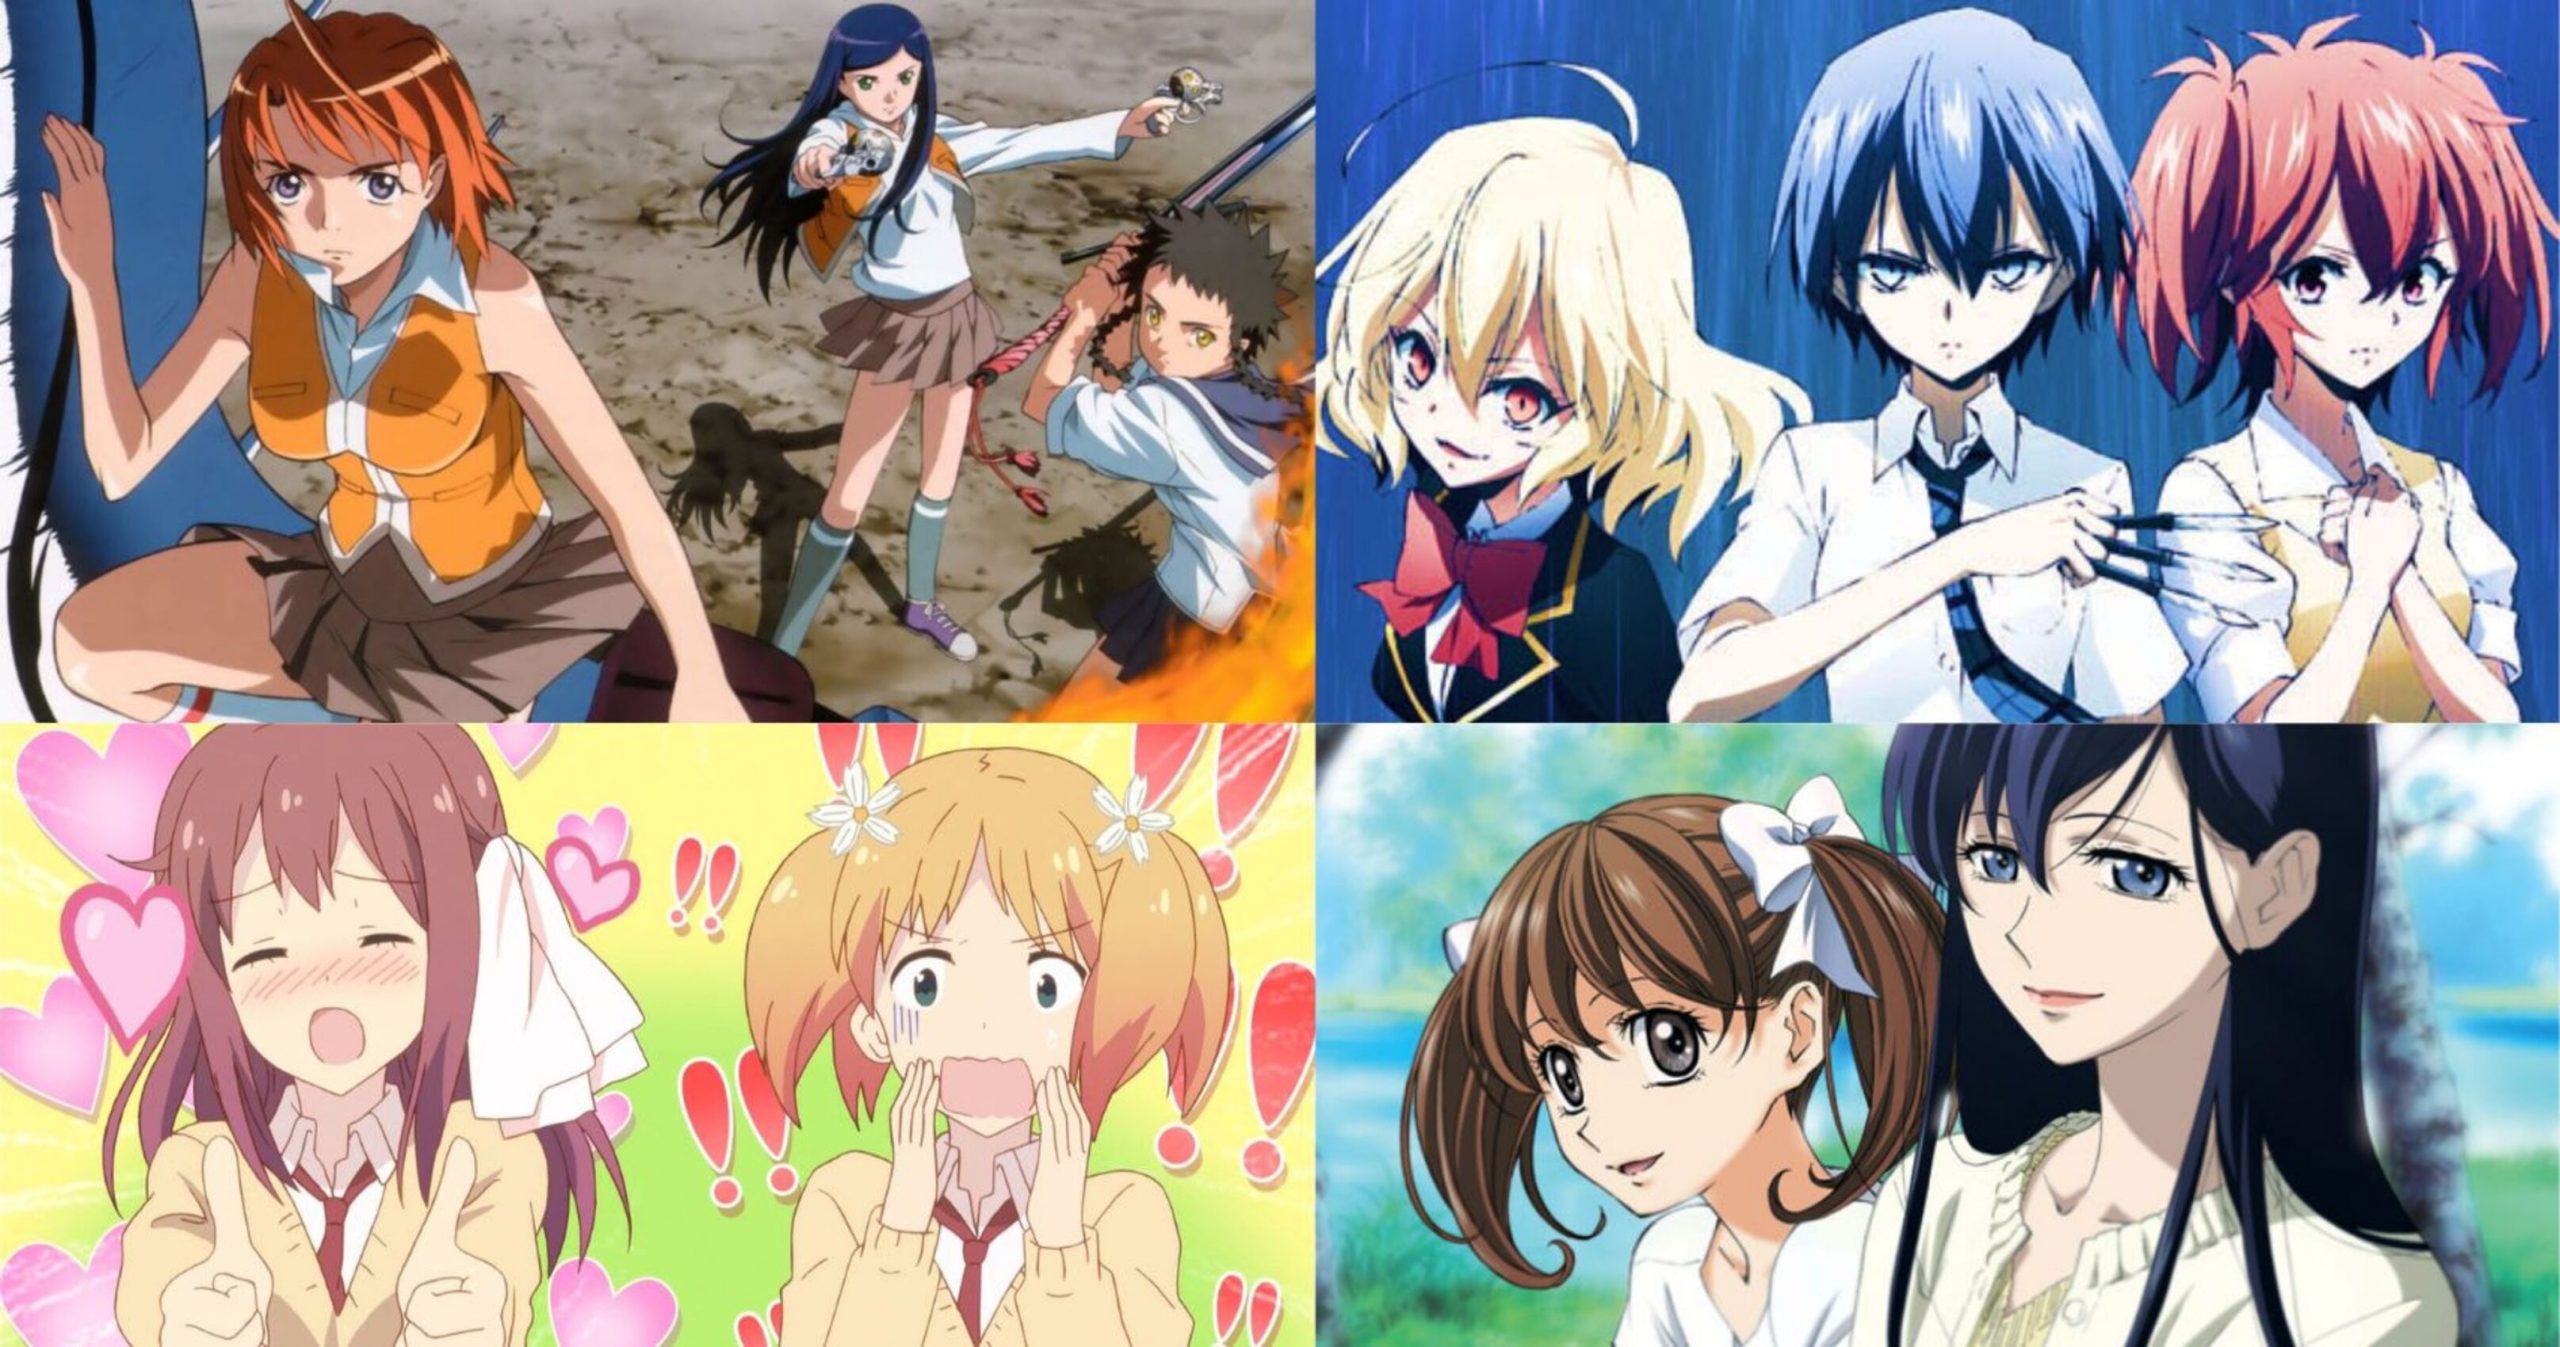 10 Best Yuri Anime Series to Watch in 2022 - OtakuKart